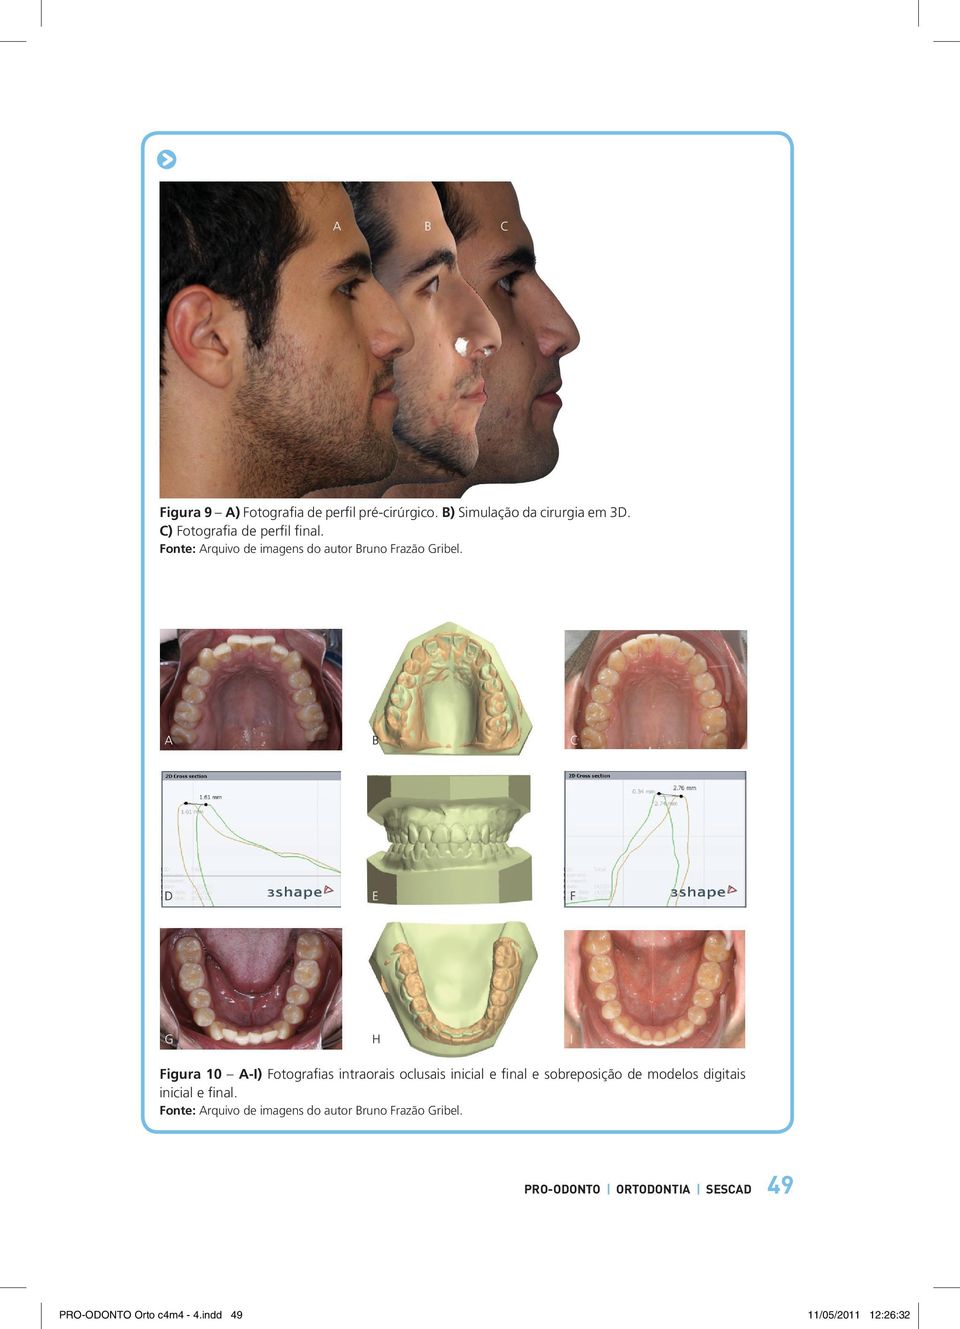 A b c d e f g h i Figura 10 A-I) Fotografias intraorais oclusais inicial e final e sobreposição de modelos